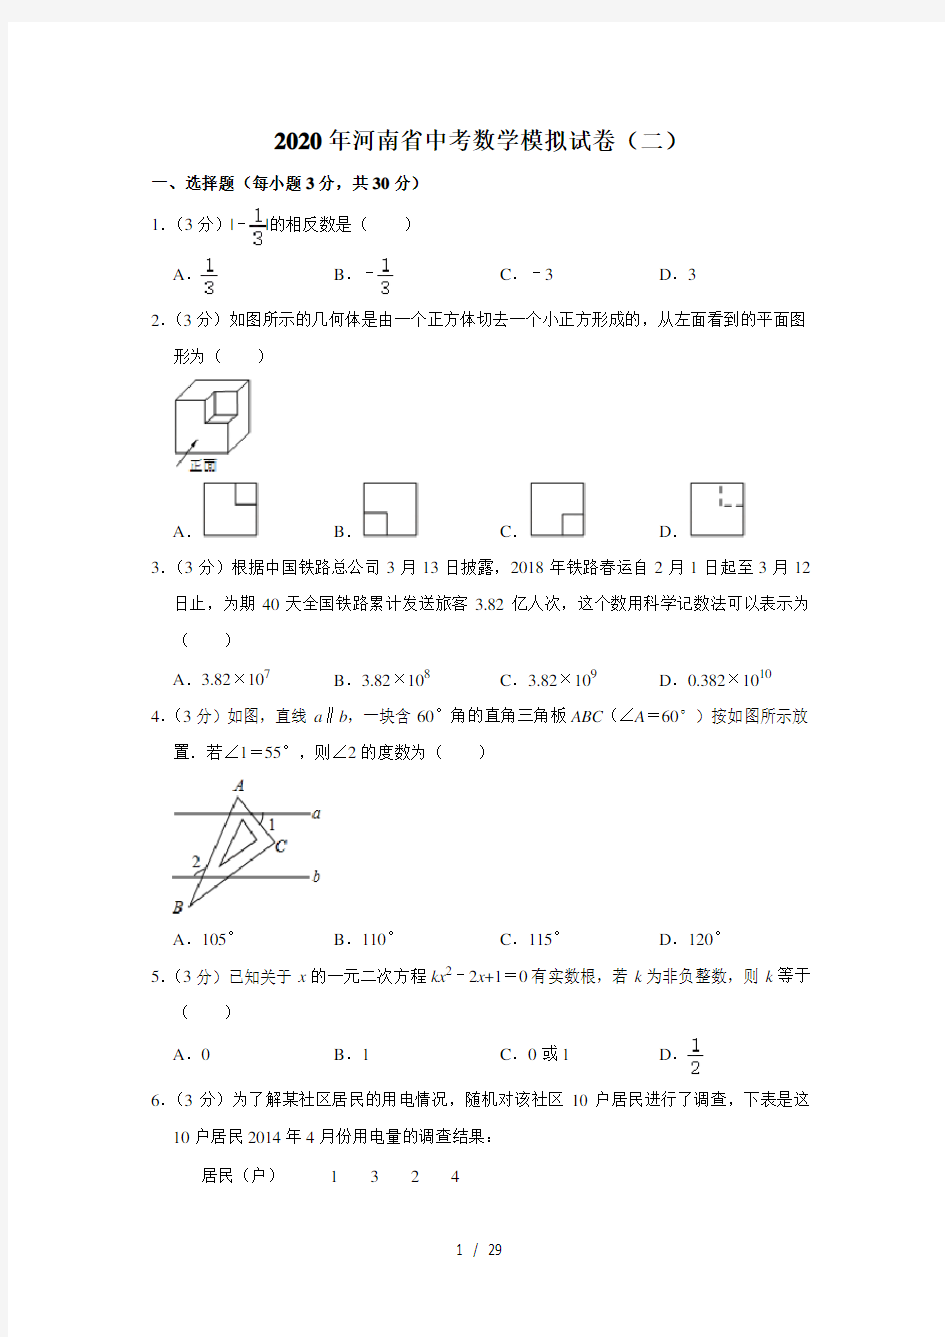 2020年河南省中考数学模拟试卷(二)  解析版